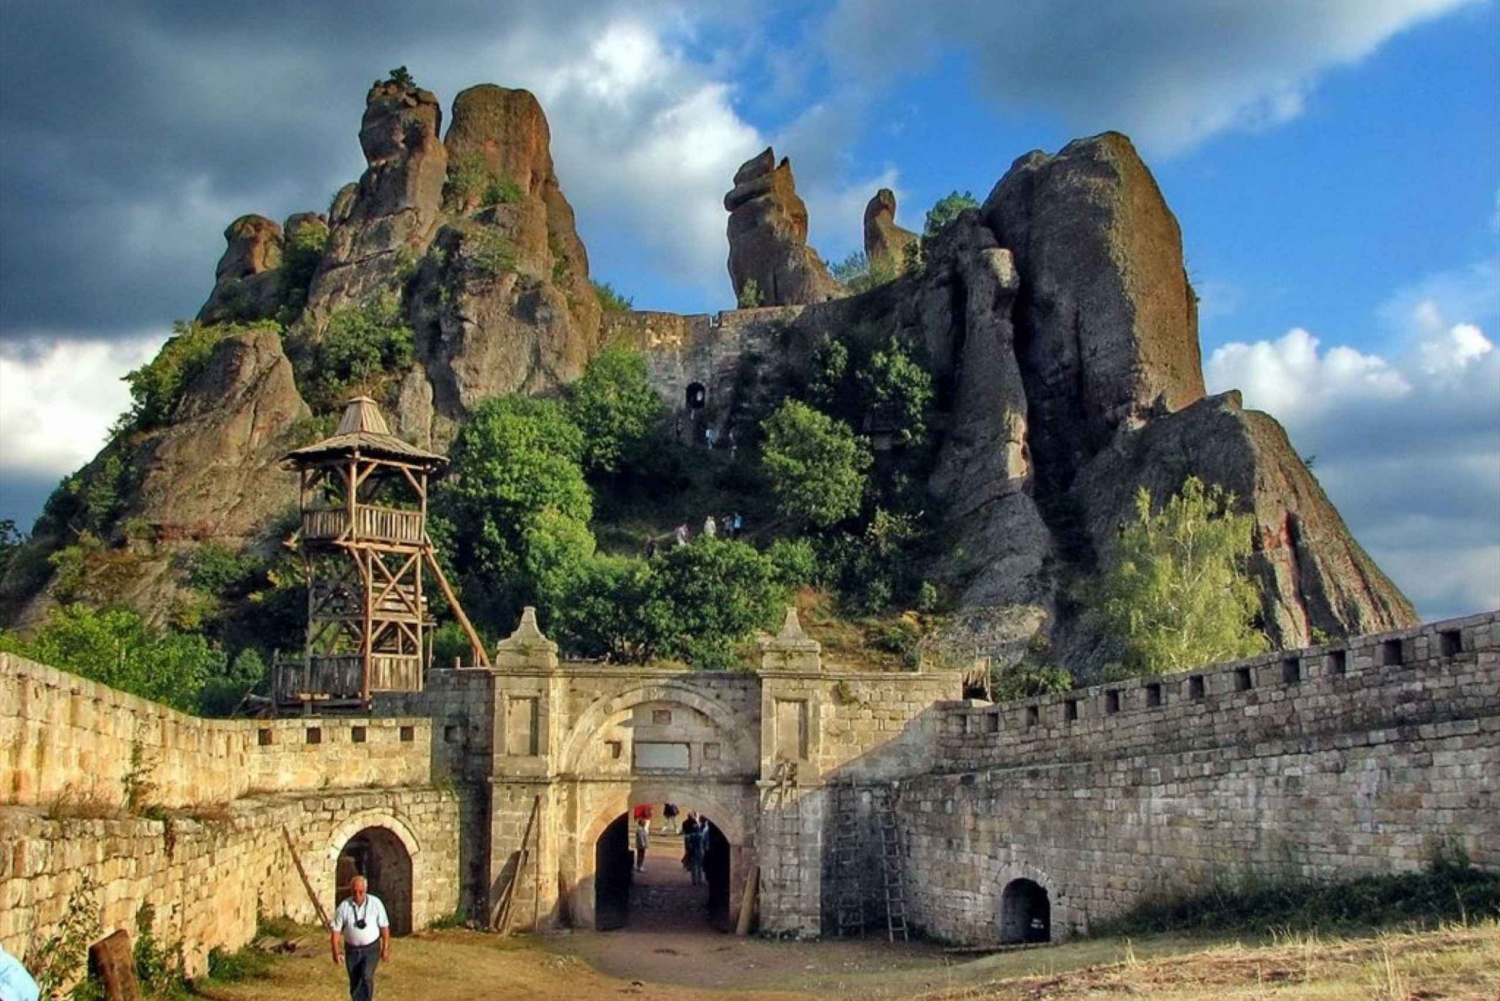 Ekotur till Belogradchiks klippor och Venetsas grotta från Sofia